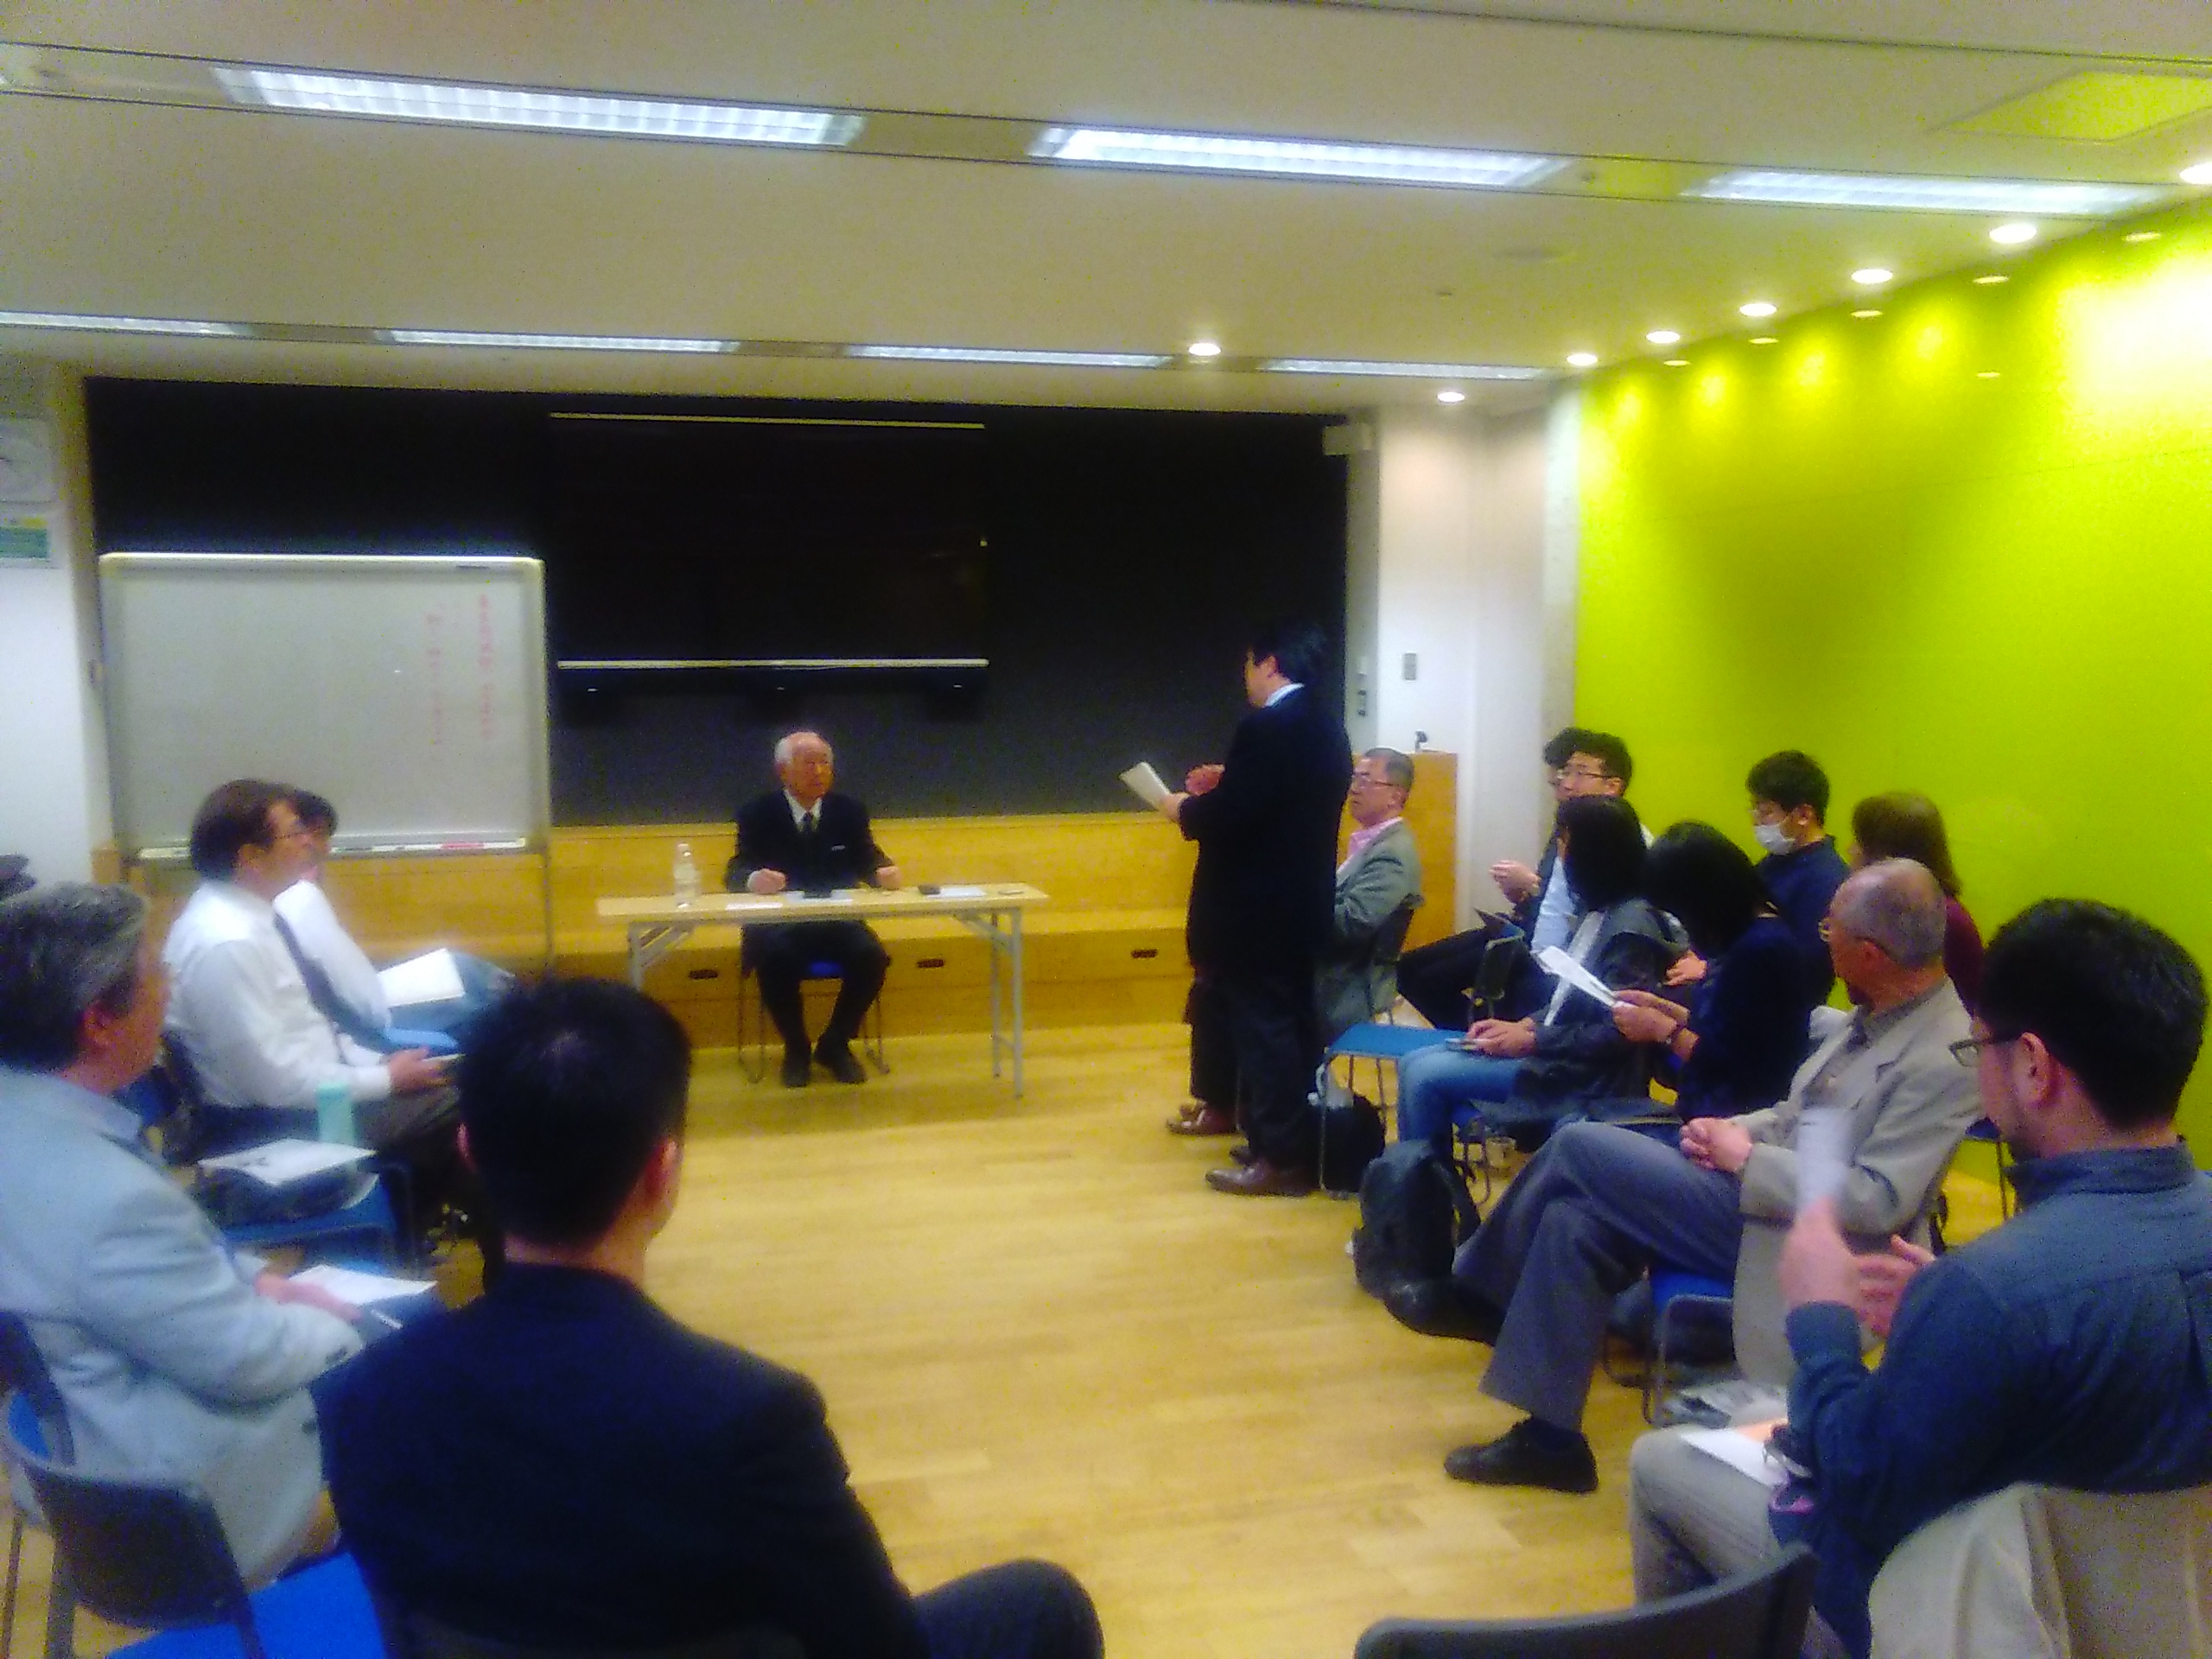 KIMG1142 - 第2回東京思風塾「新しい御代をいかに生きるか」をテーマに開催しました。